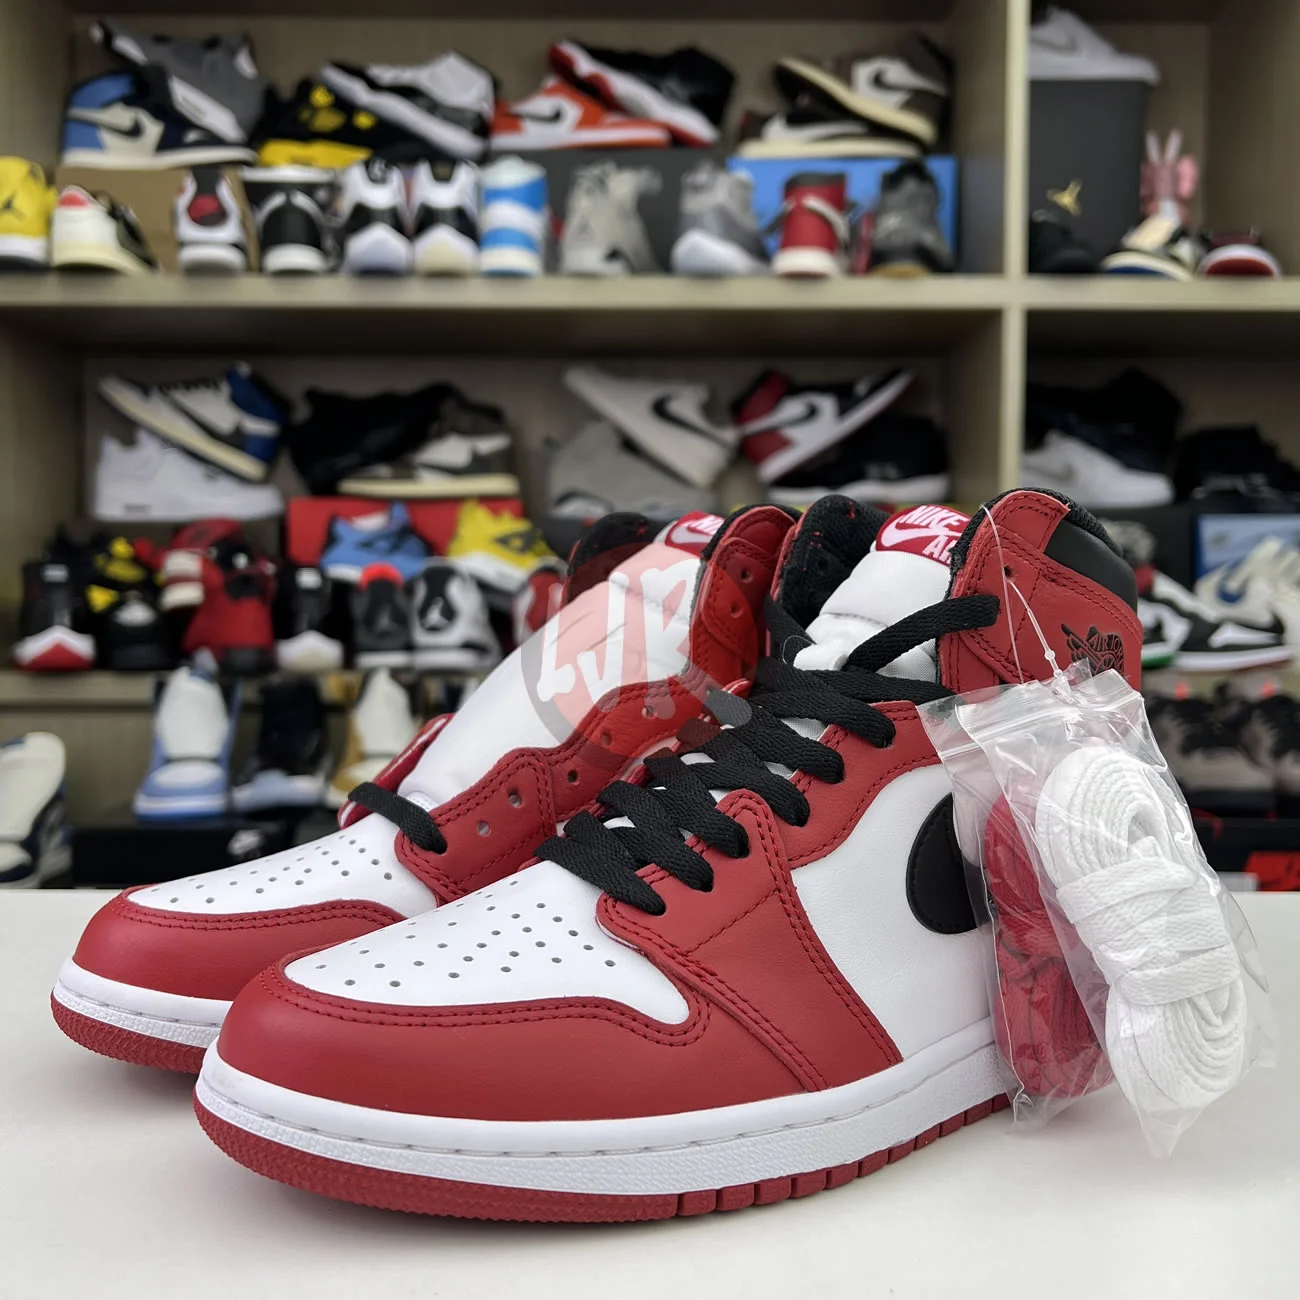 Air Jordan 1 Retro Chicago 2015 555088 101 Ljr Sneakers (7) - bc-ljr.net